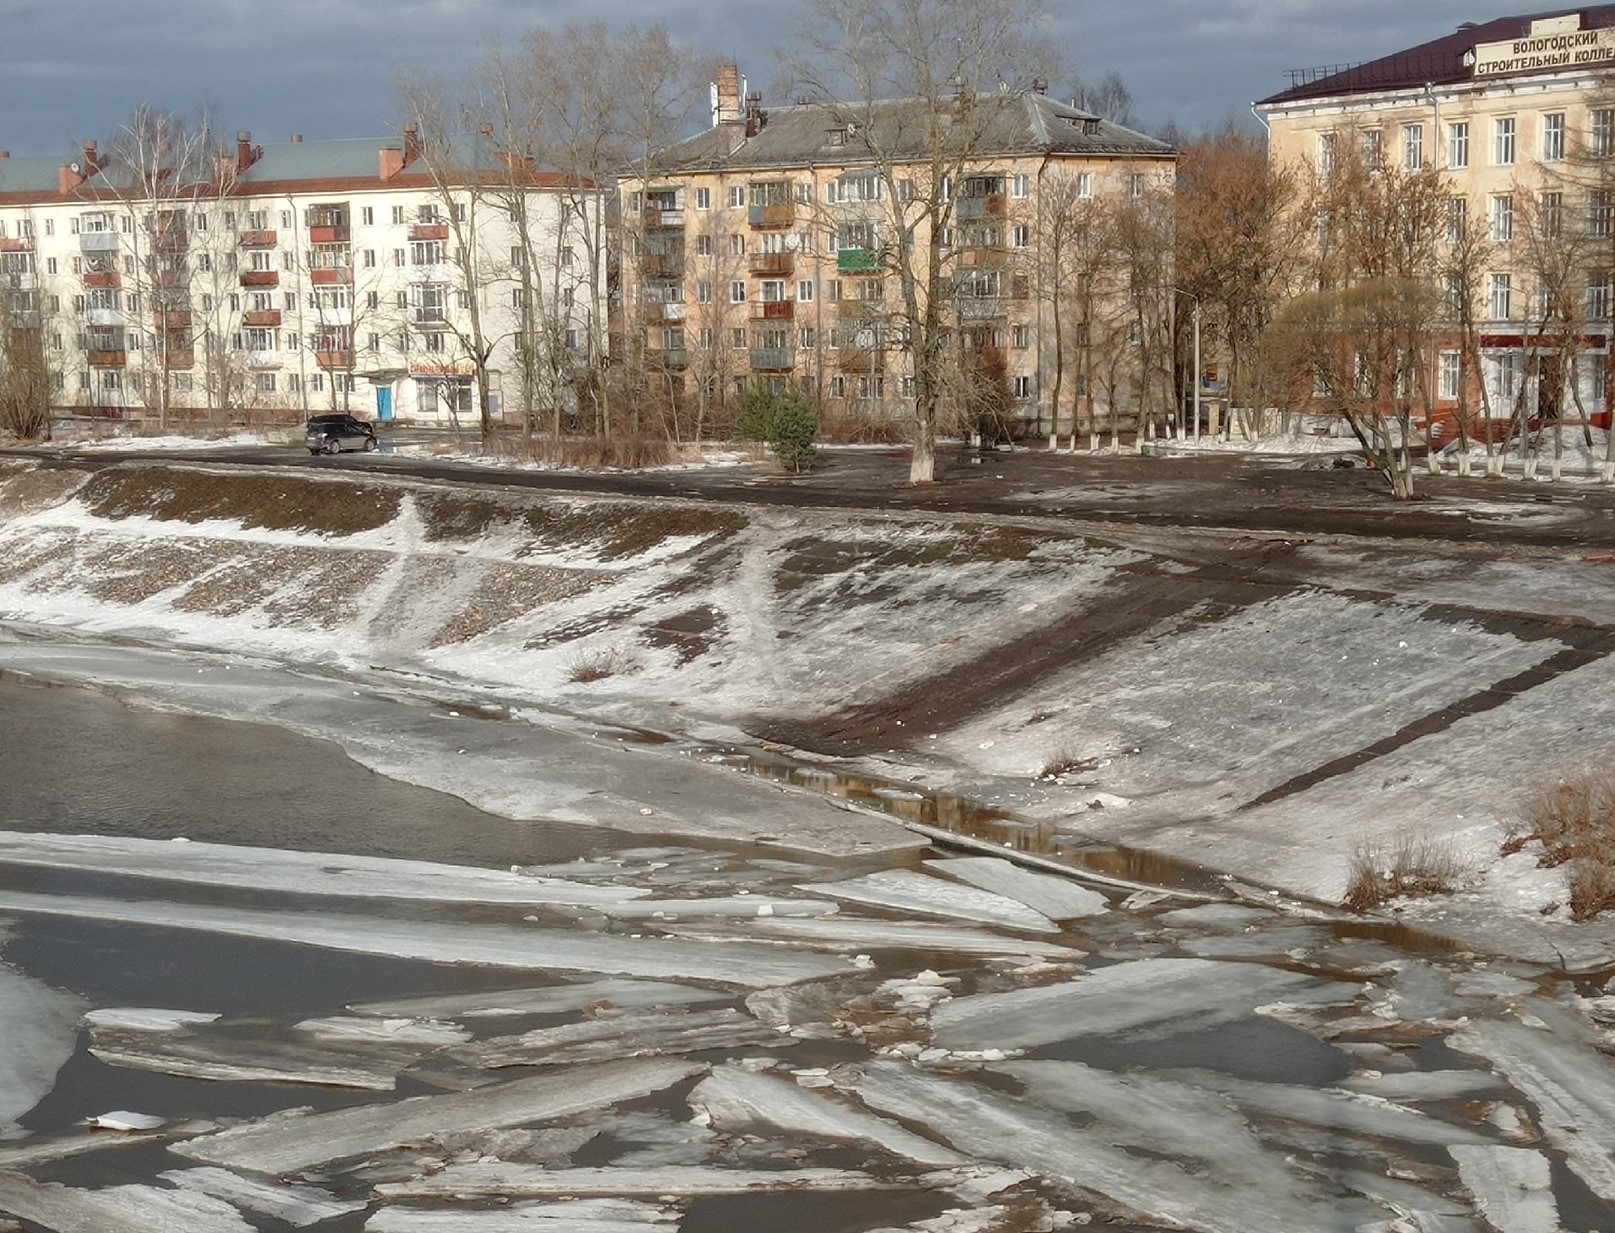 Ледоход пошел на реке Вологде 25 марта